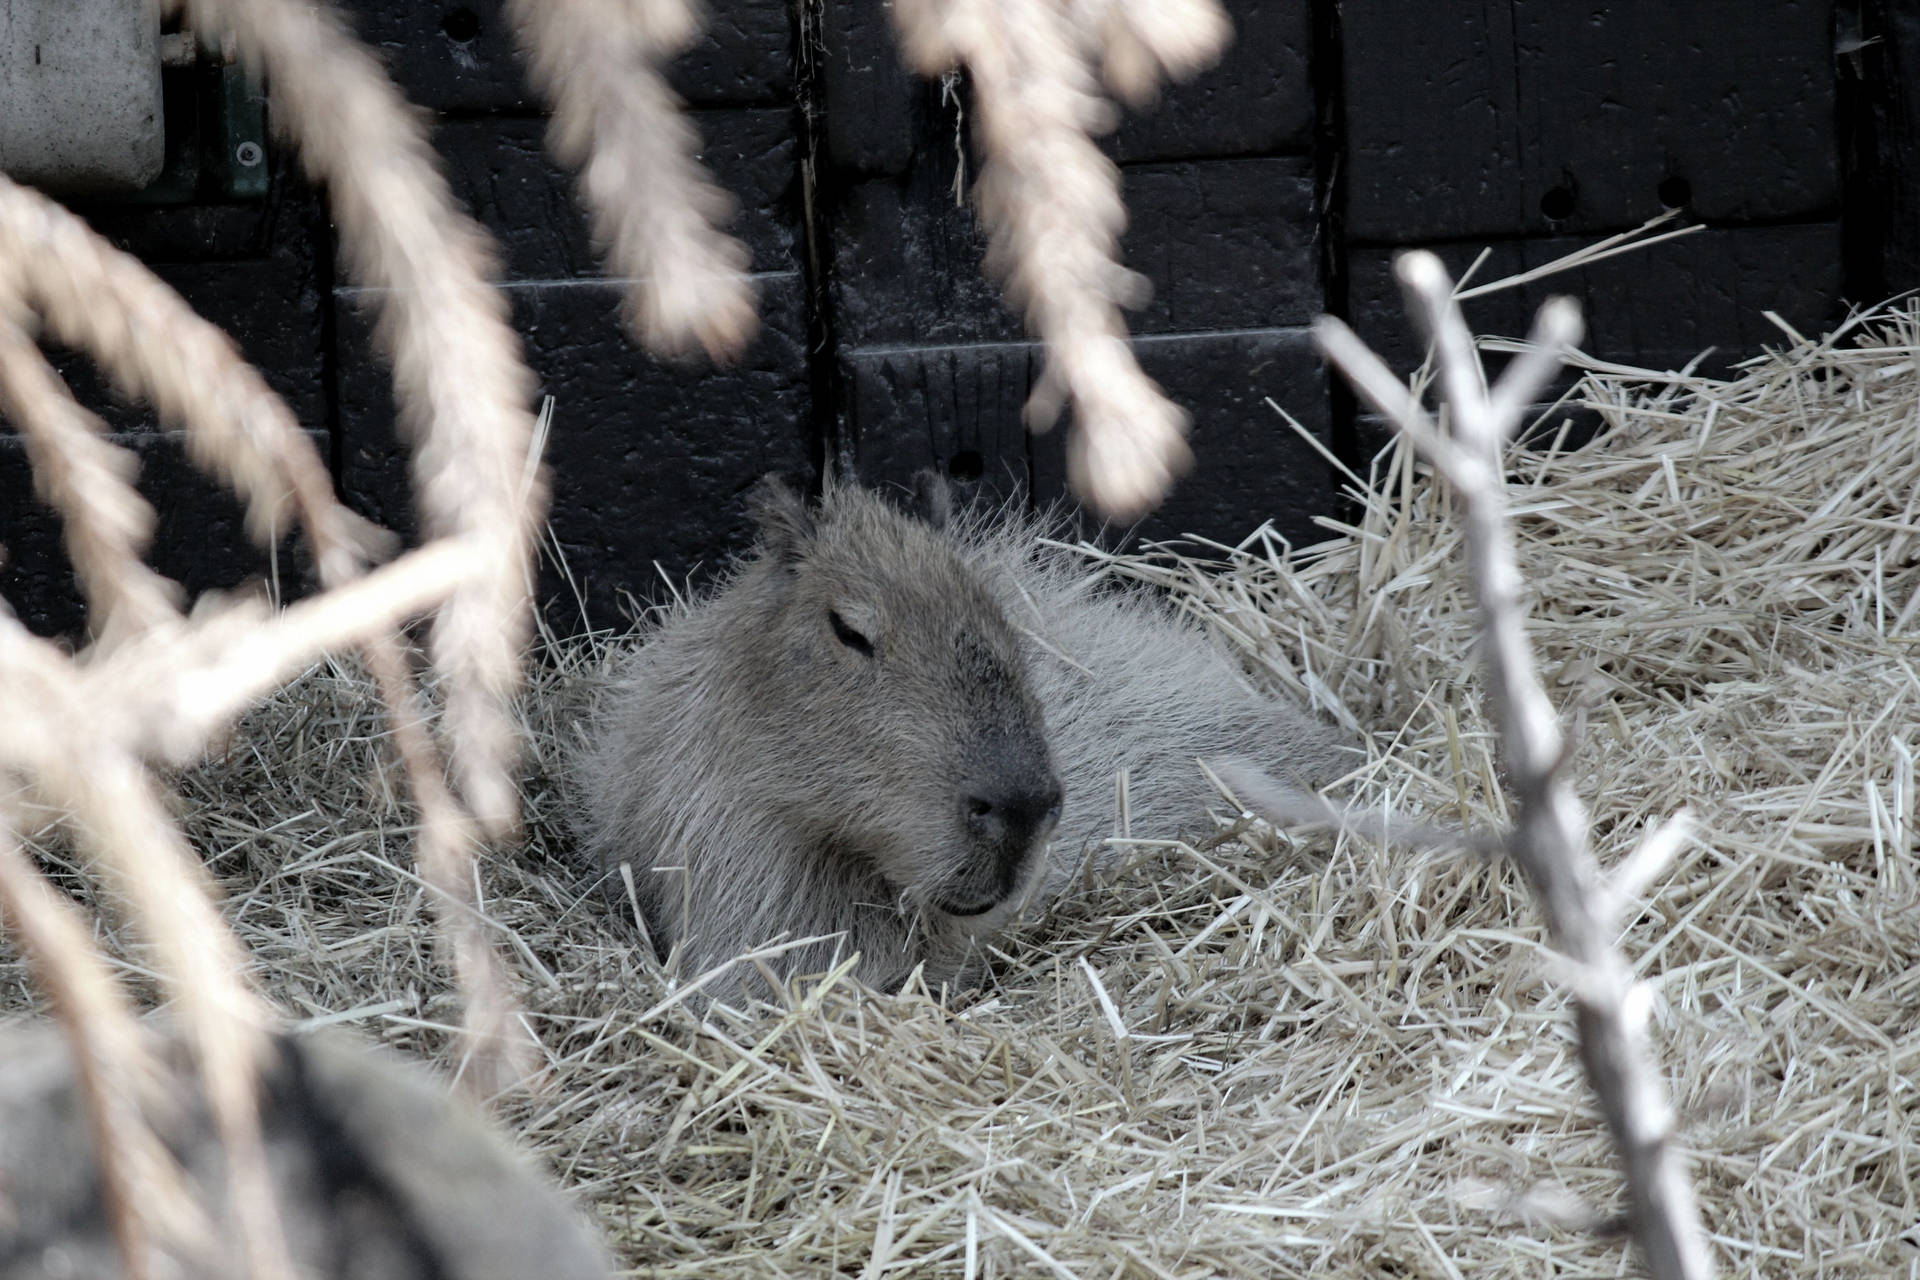 Sleeping Capybara On Hay